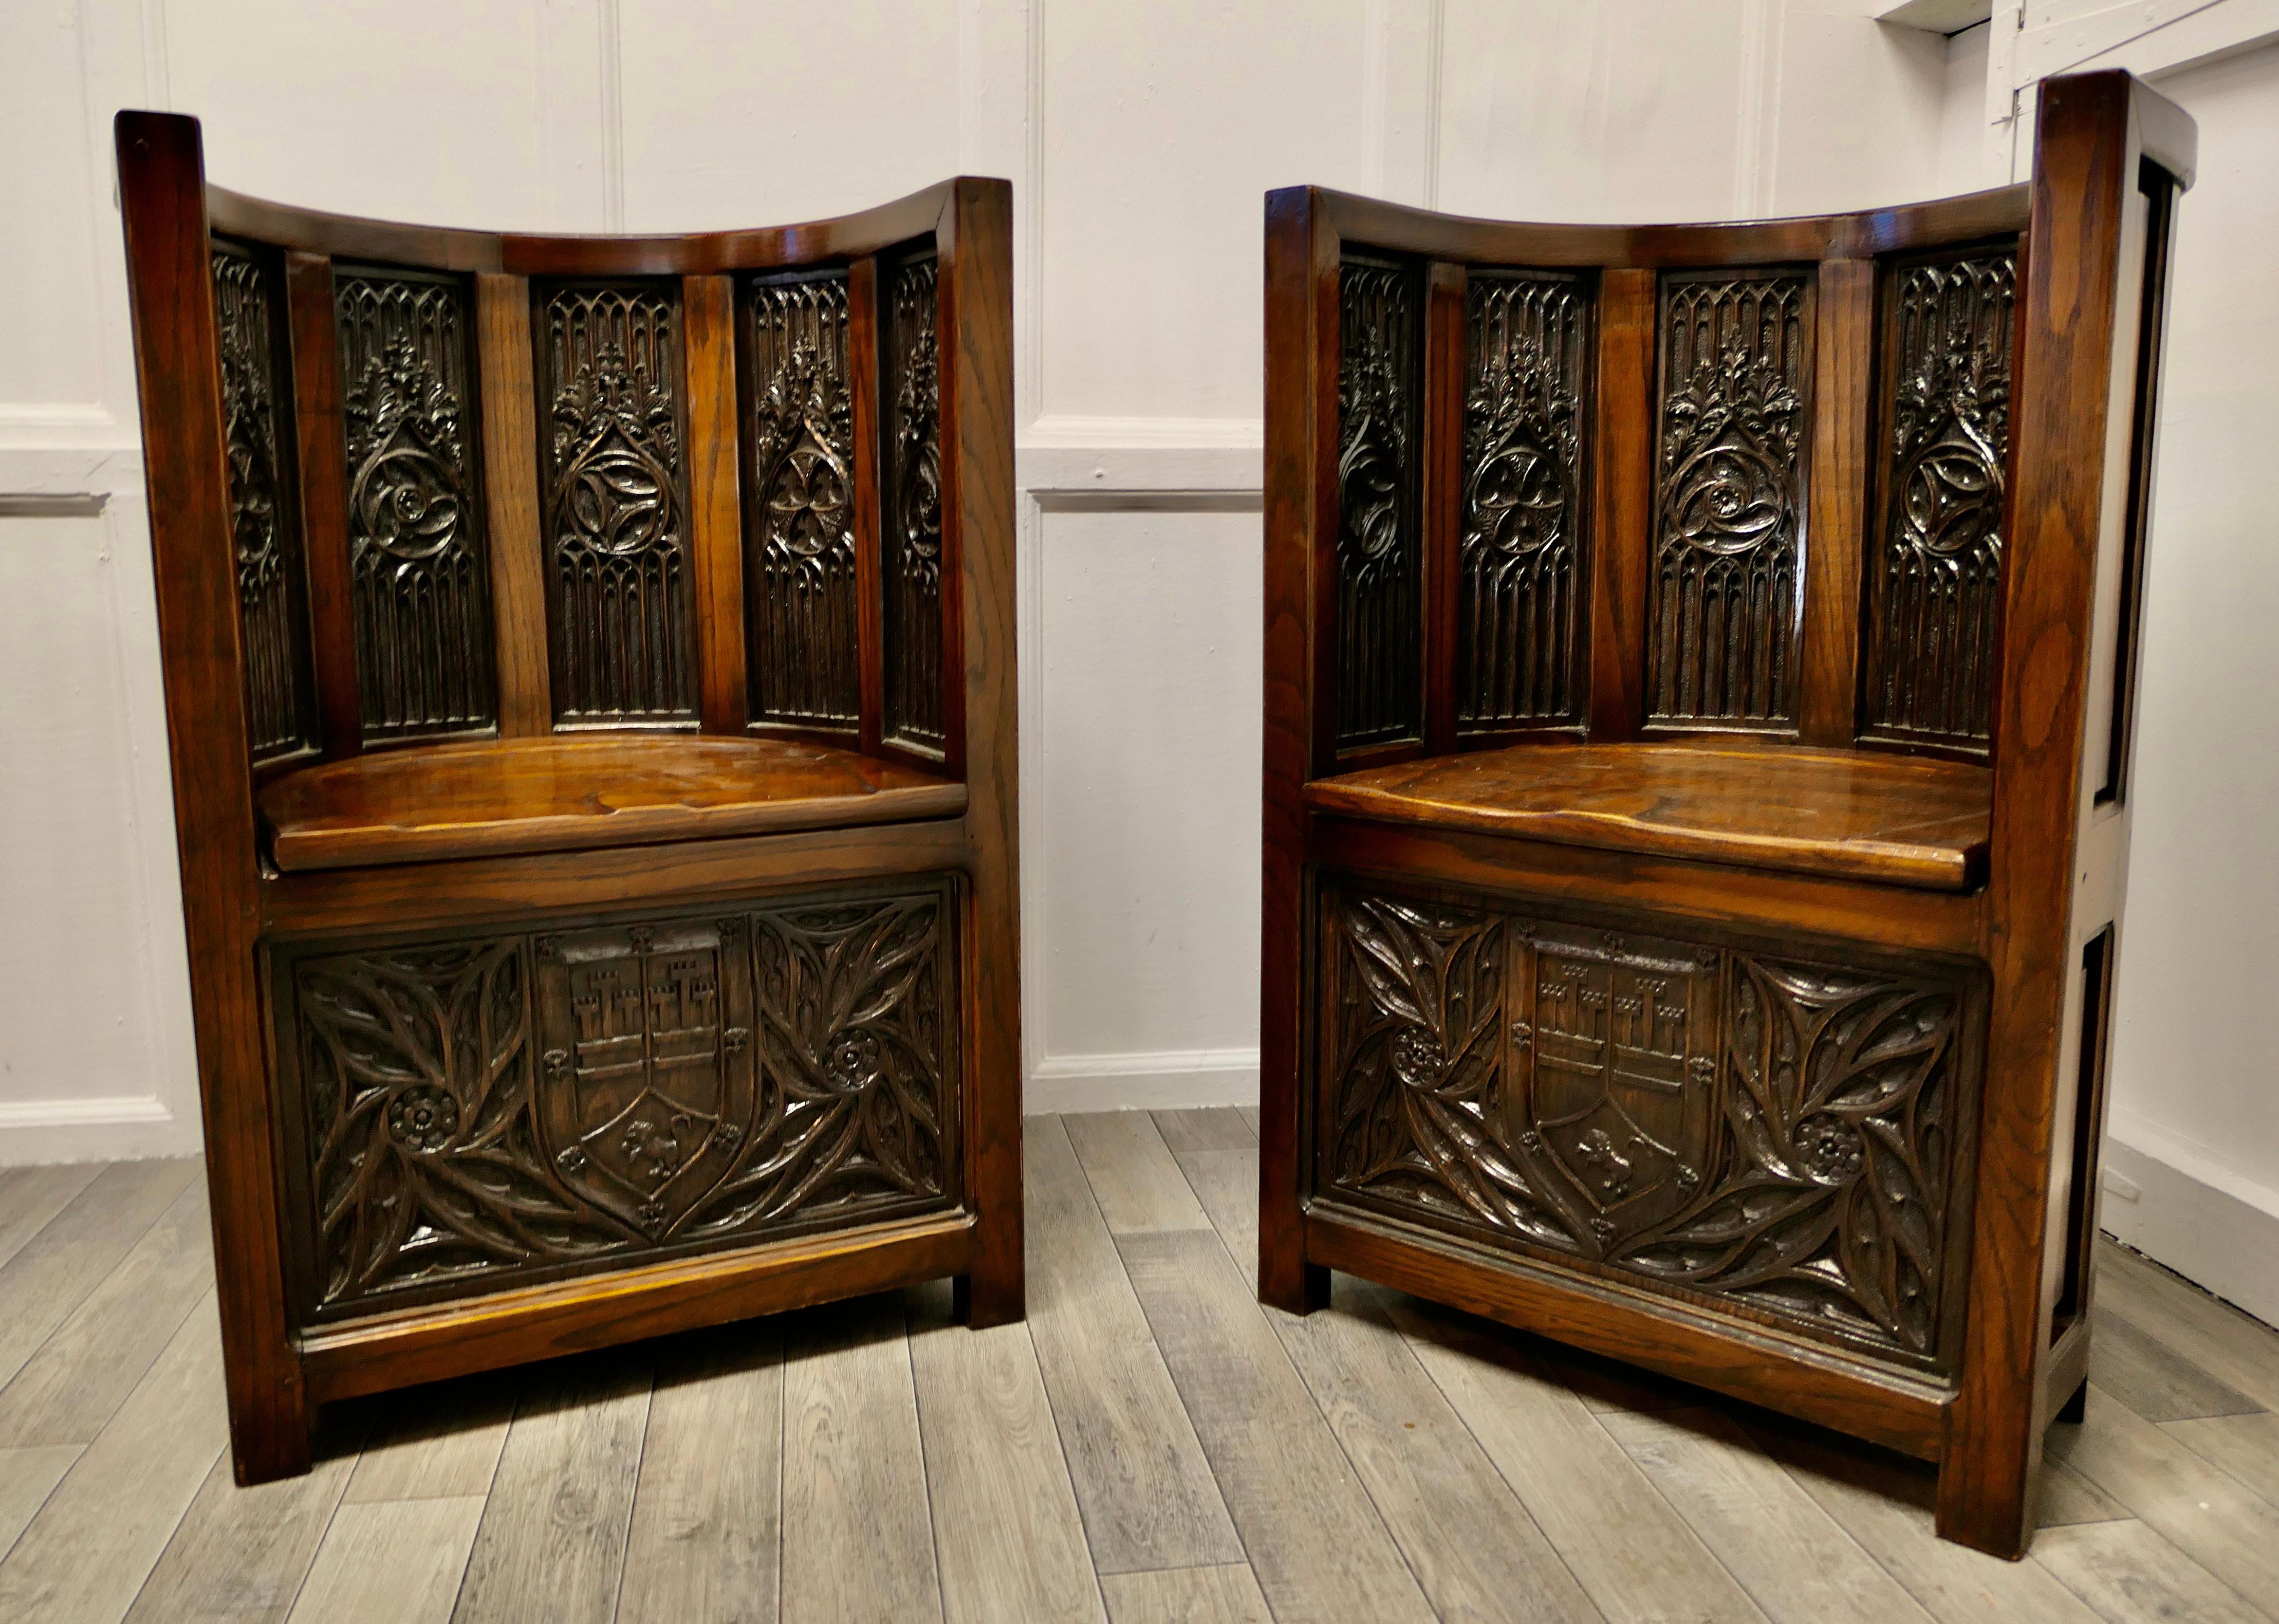 Chaises d'entrée en forme de tonneau, sculptées, inspirées par Pugin.

Il s'agit d'une paire de chaises de vestibule magnifiquement conçues dans le style néo-gothique du mouvement Arts and Crafts du 19e siècle.
Les chaises sont de la plus haute